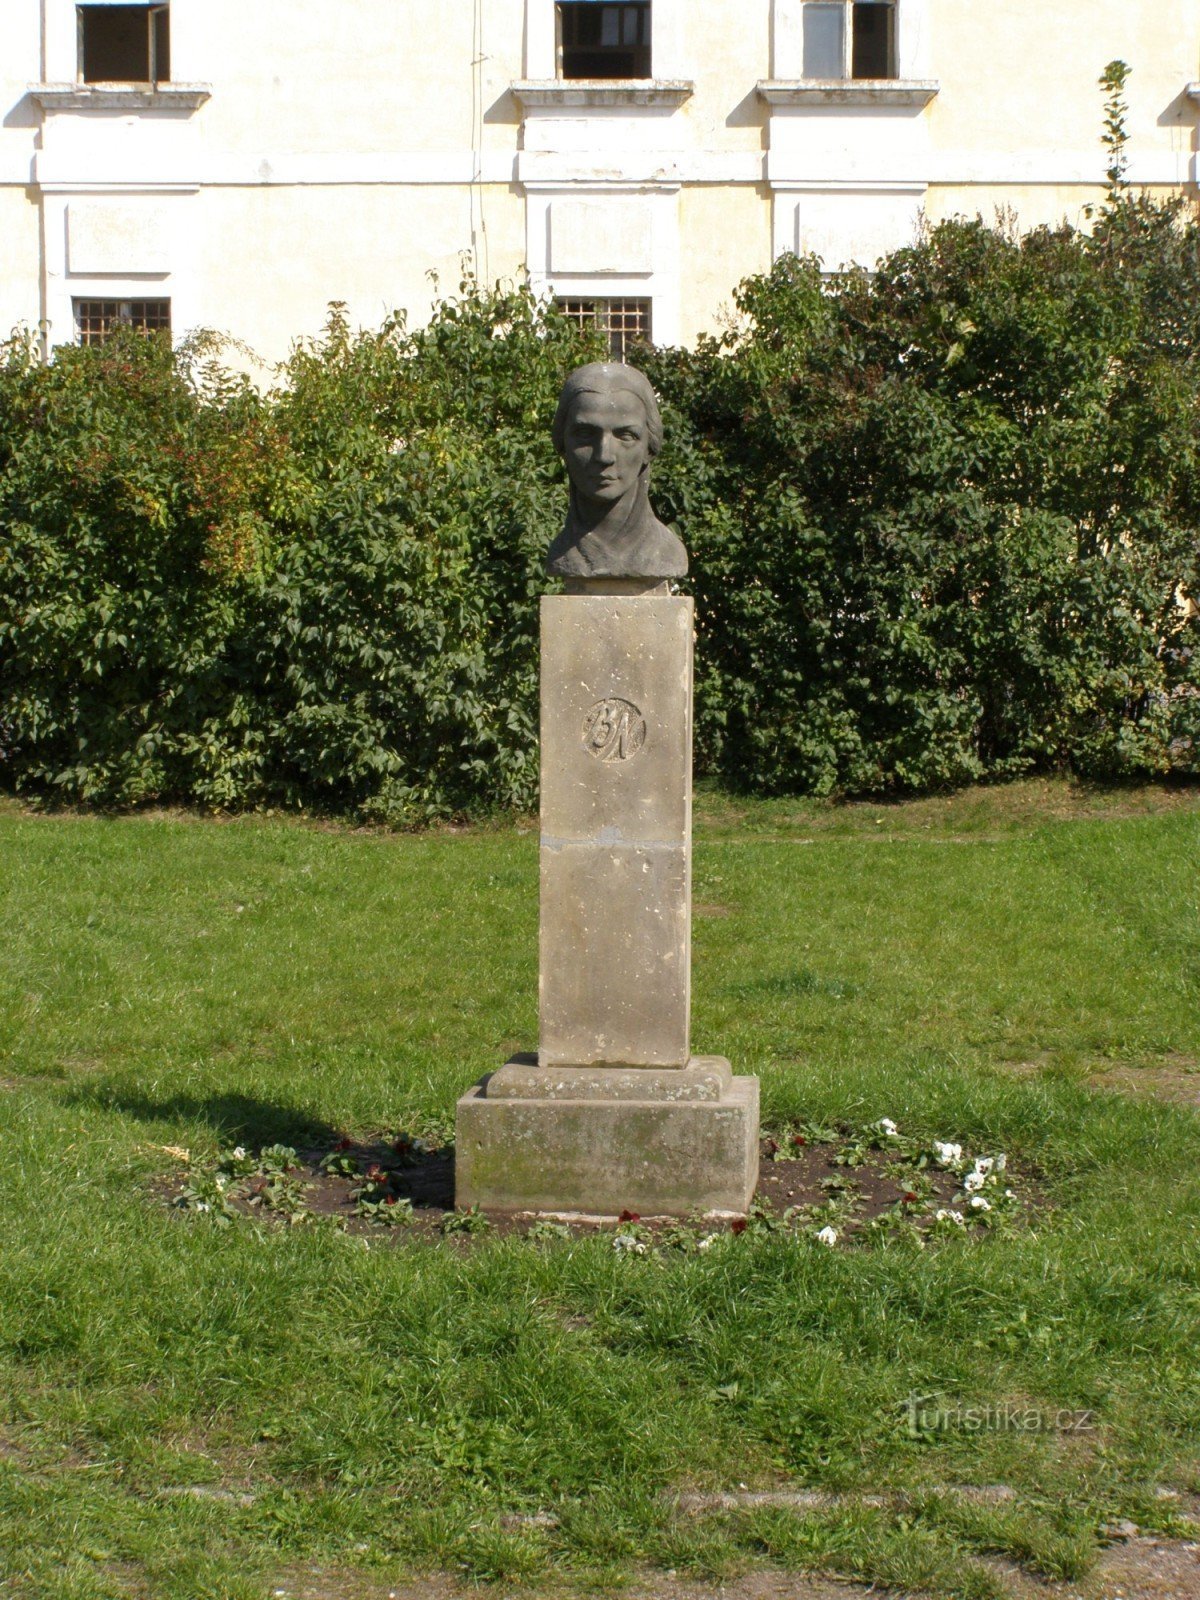 Josefov - monument to Bozena Němcová